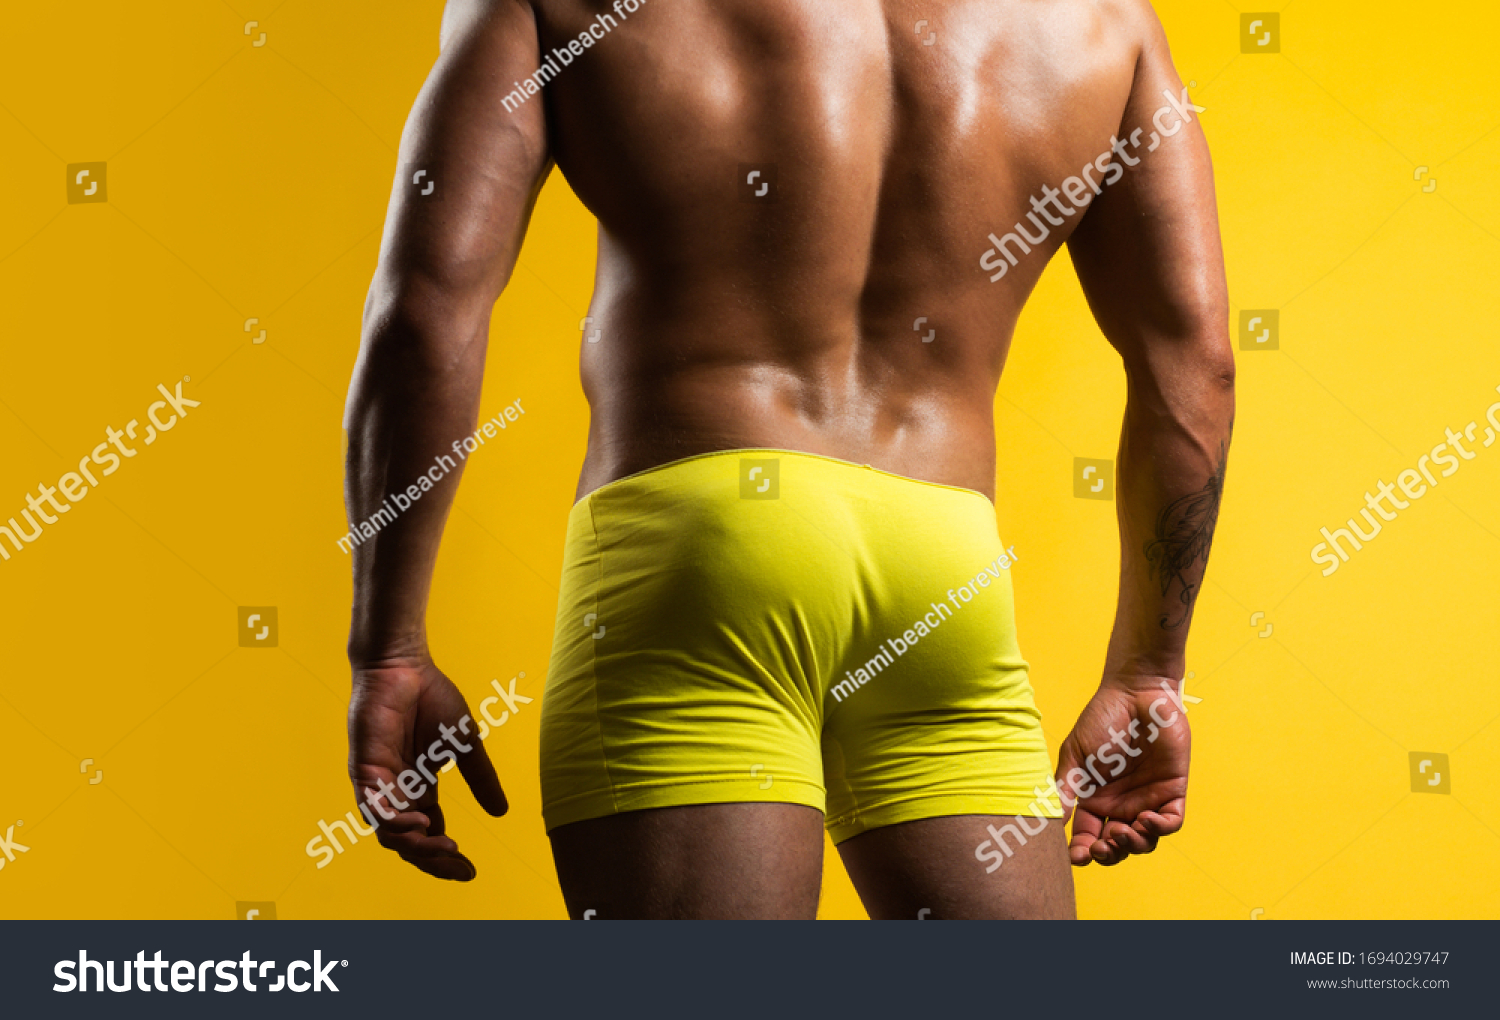 黄色い背景に人の尻 筋肉質の臀部を持つ筋肉質の男性 裸の胴体 裸の雄のロバ の写真素材 今すぐ編集